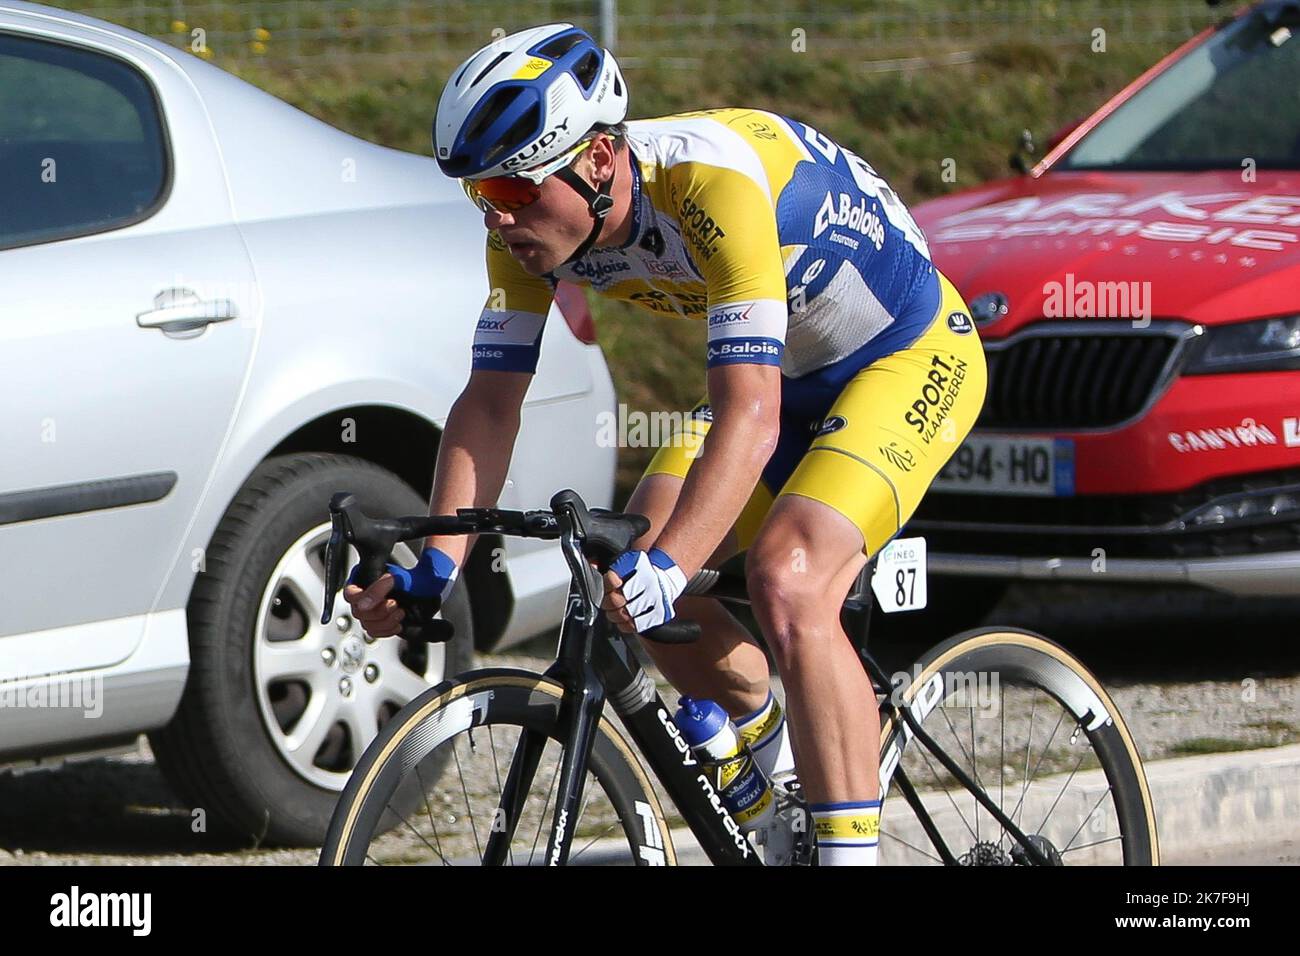 ©Laurent Lairys/MAXPPP - WILLEMS Thimmo du Sport Vlaanderen - Baloise lors du Grand Prix du Morbihan 2021, Cyclisme sur 16 octobre 2021 à Grand-champ, France - photo Laurent Lairys / MAXPPP Banque D'Images